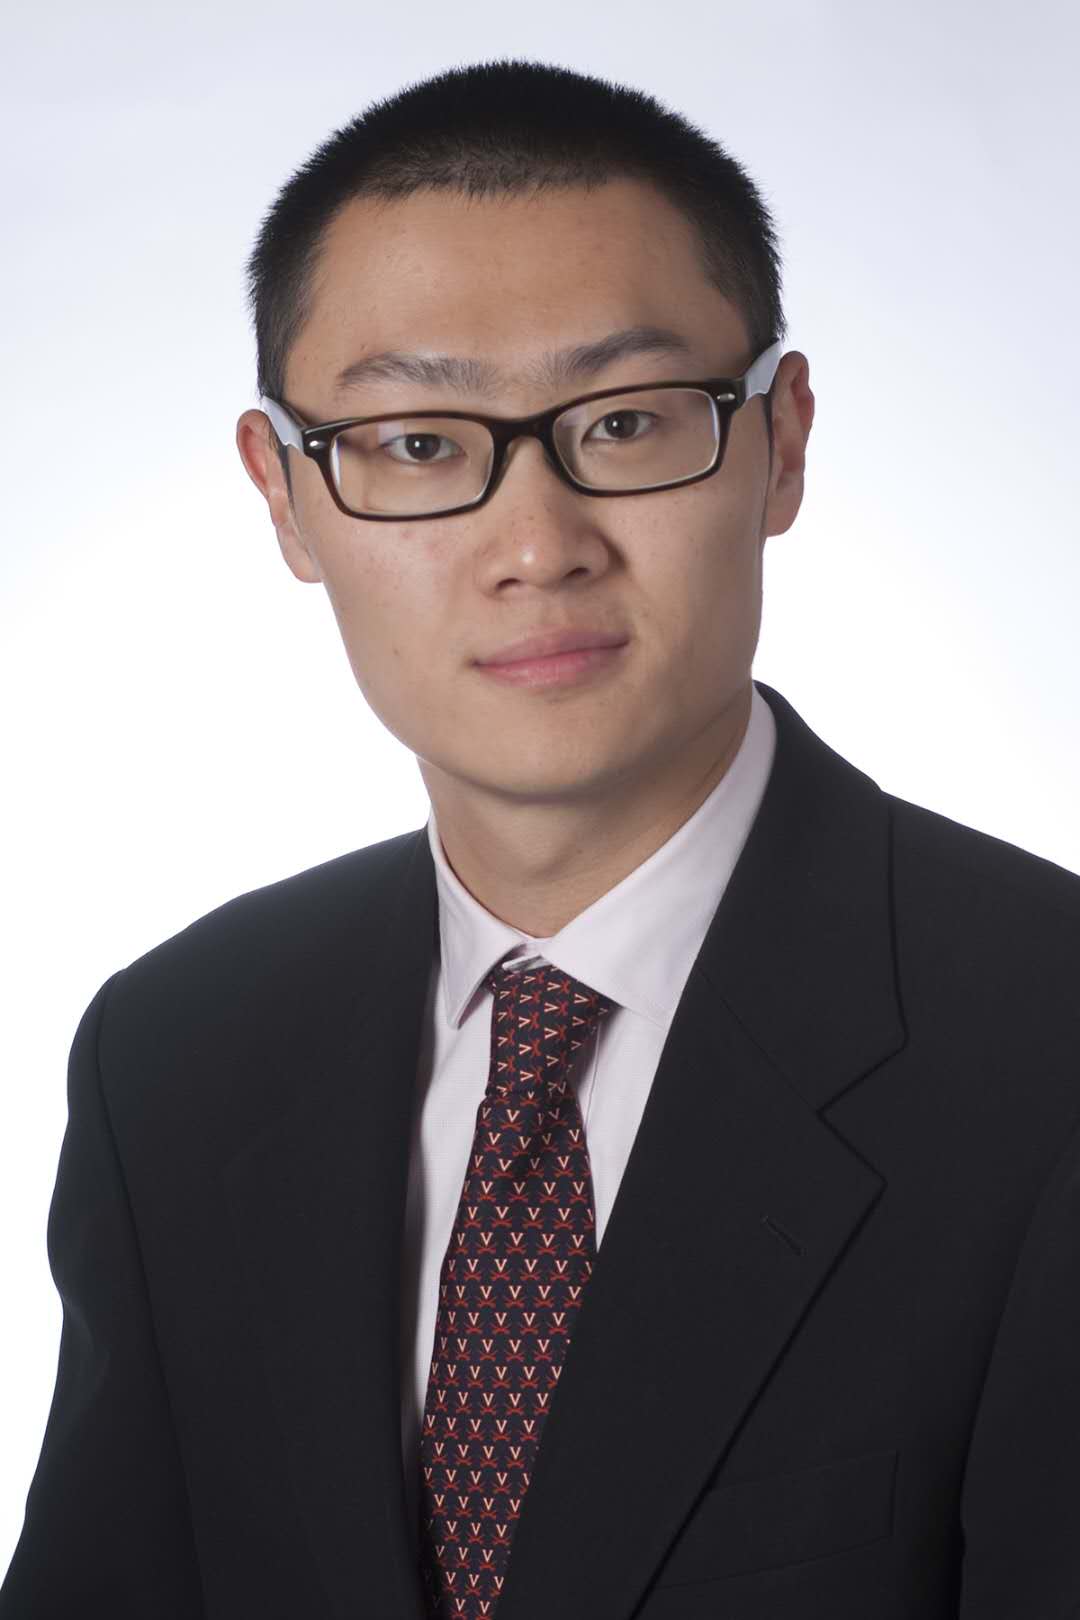 Jay Yuan, MPP’16